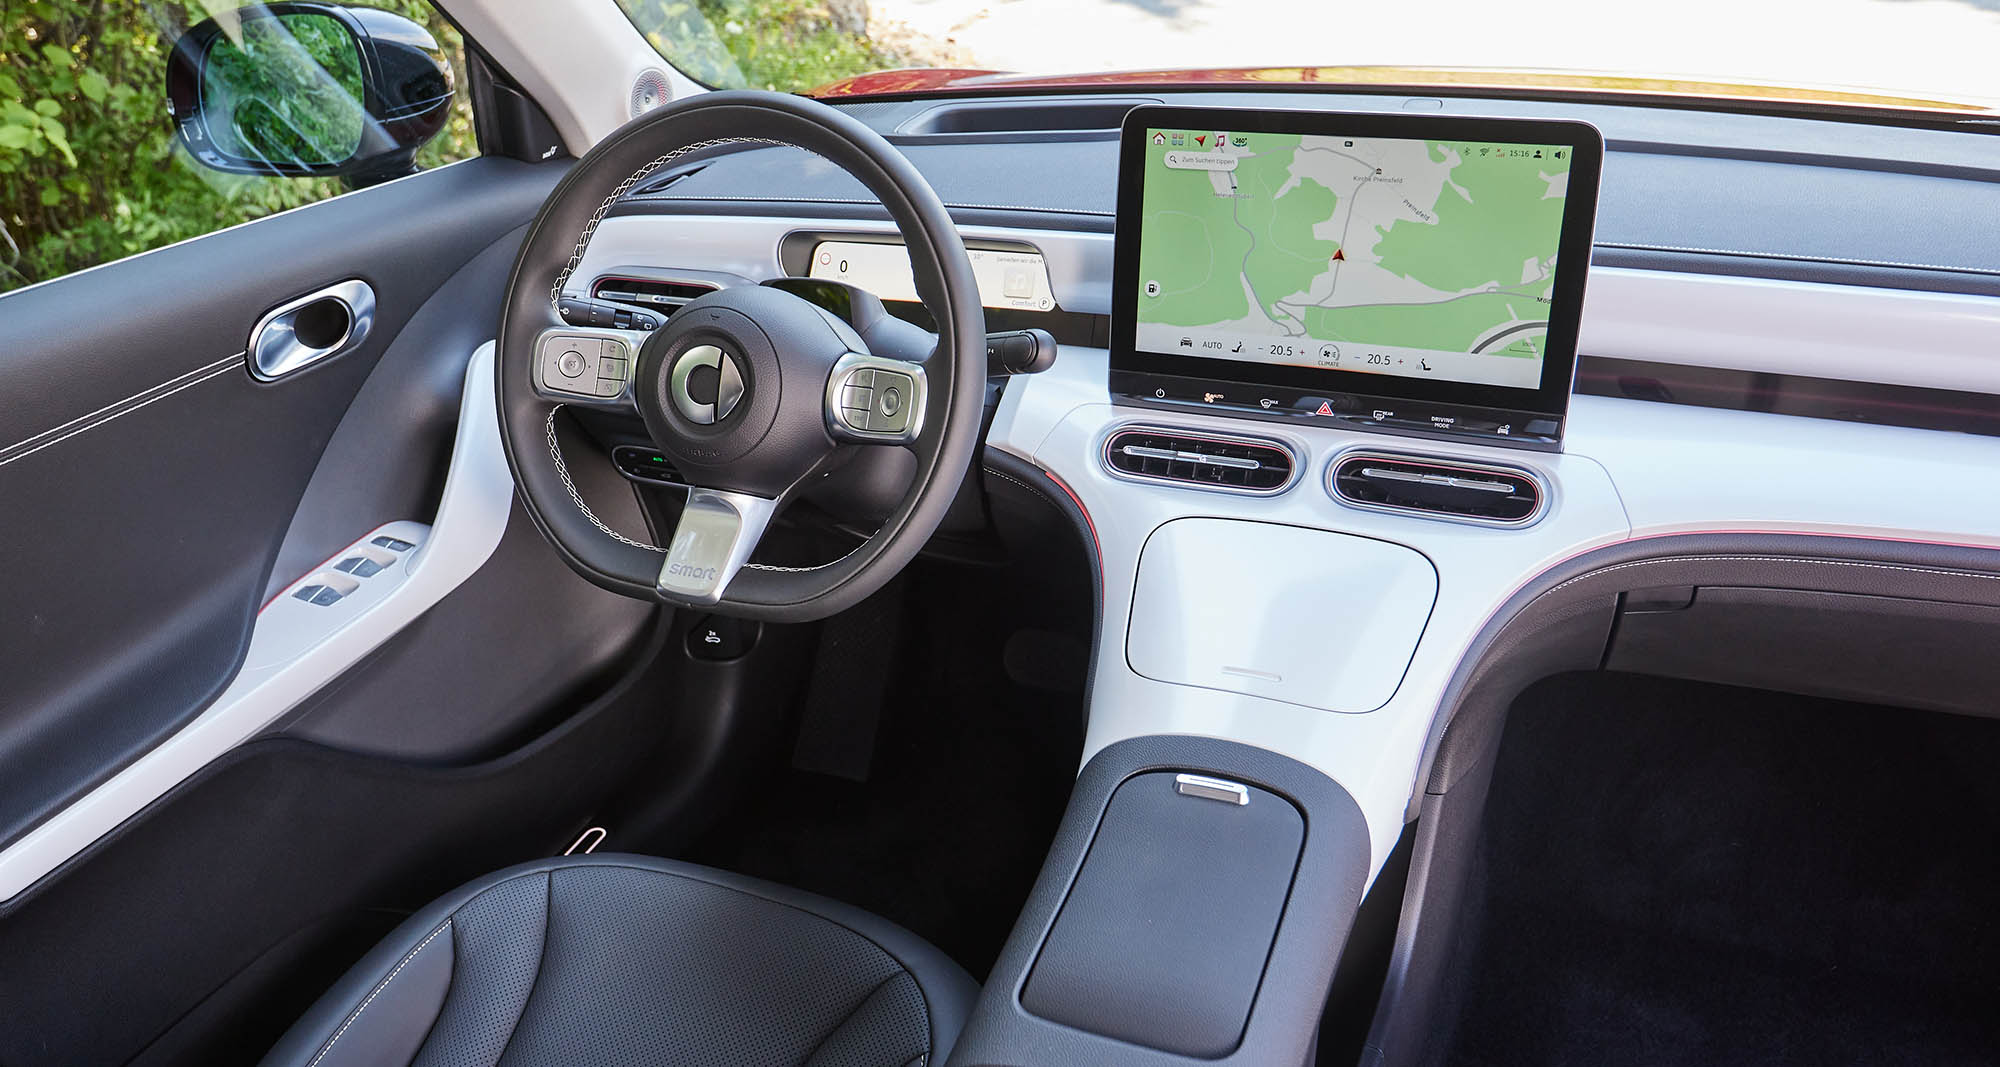 Test & Tipps: Welcher Auto Innen- und Display Reiniger